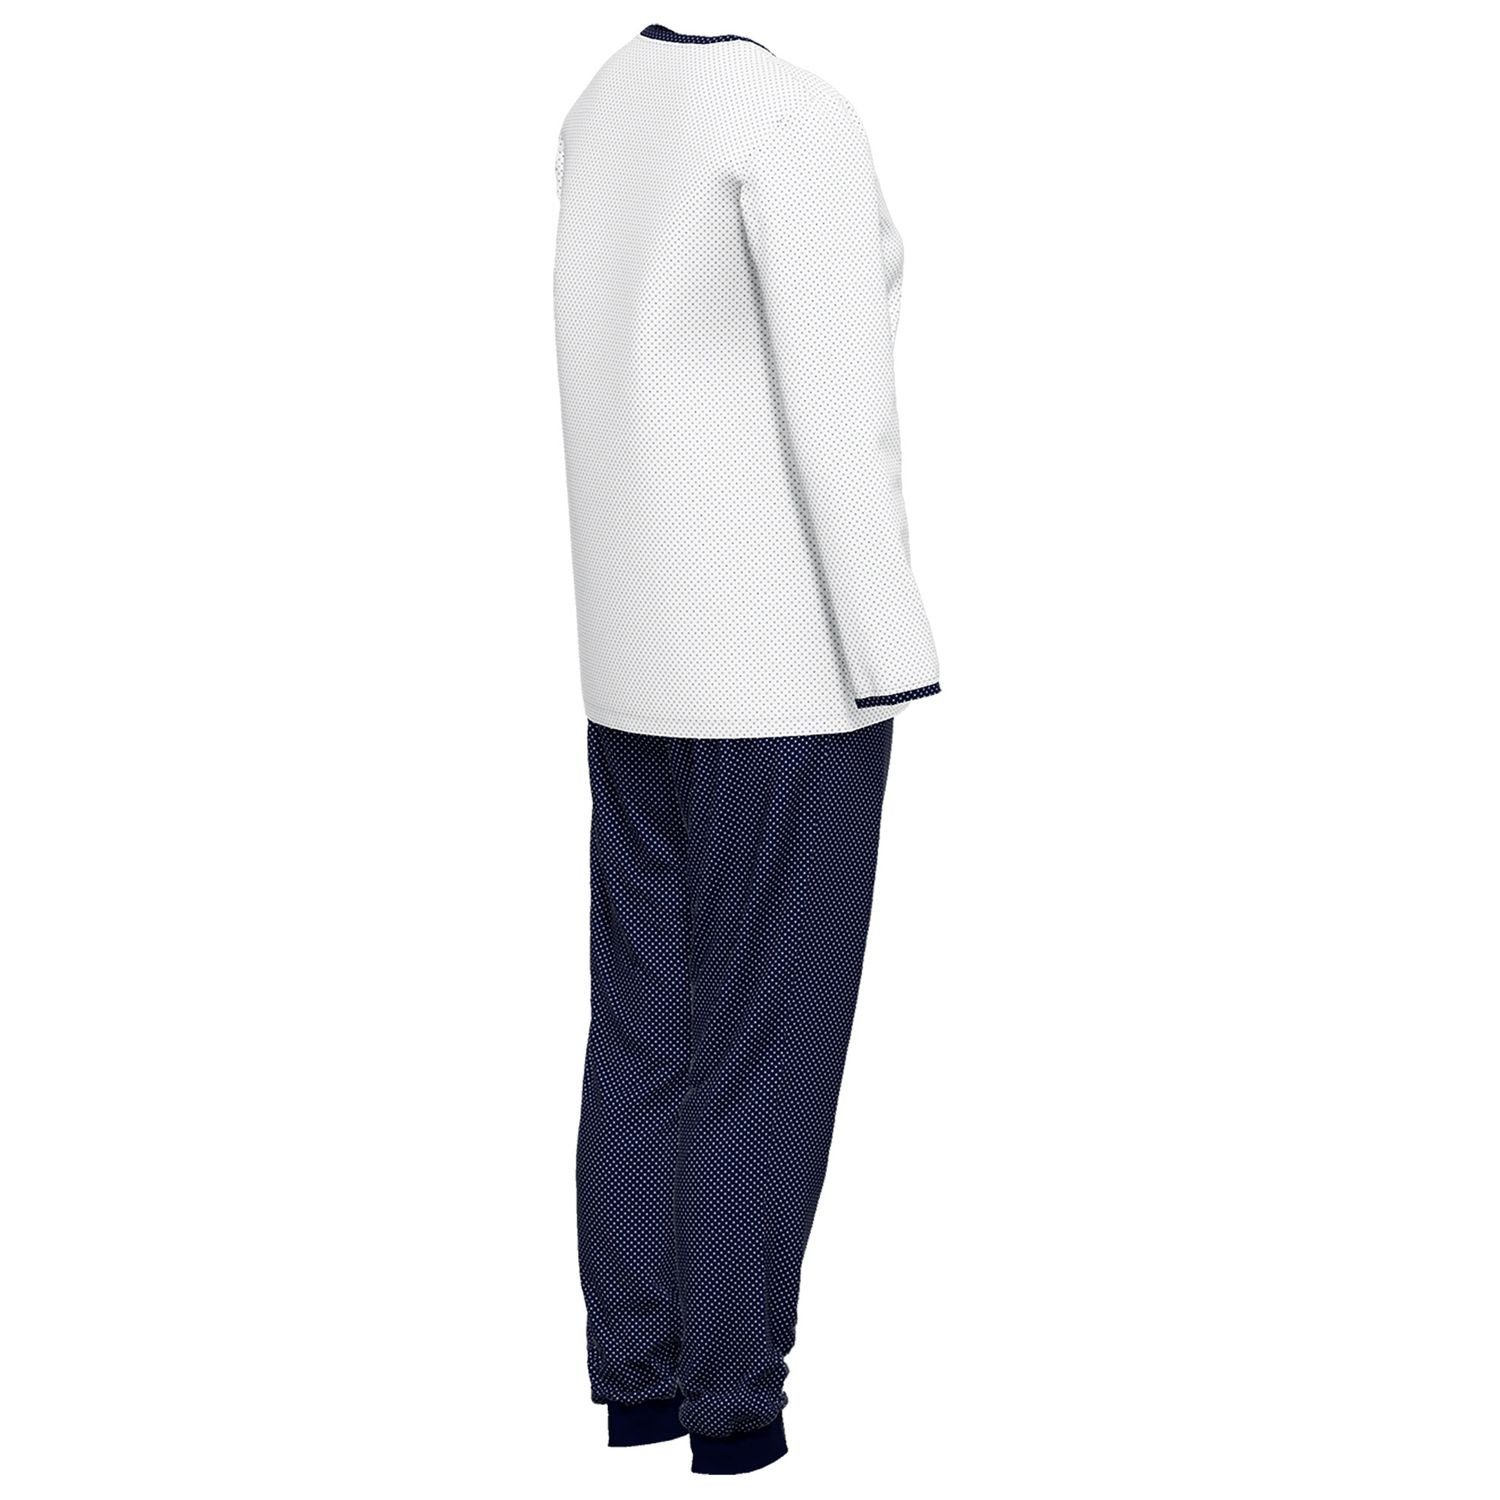 GÖTZBURG Schlafanzug mit Henley-Auschnitt, Knöpfe, Baumolle navy langarm, gepunktet weiß bequem, weich, reine 